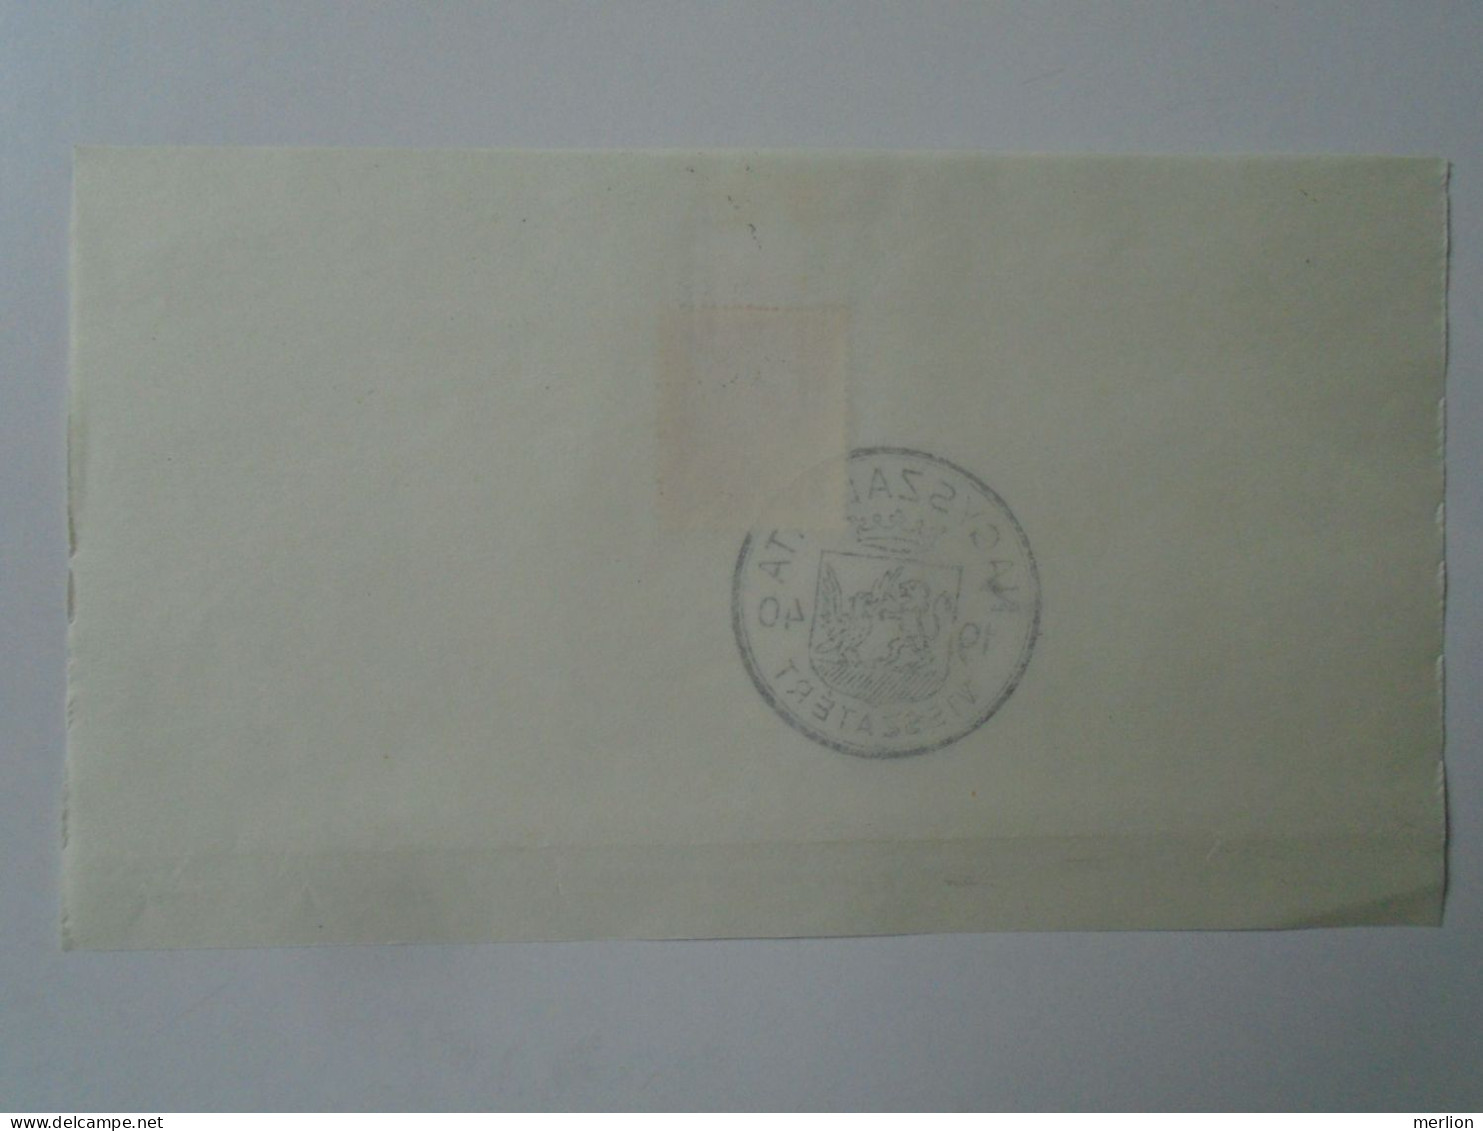 ZA451.32  Hungary -Nagyszalonta  Visszatért -Commemorative Postmark 1940 - Poststempel (Marcophilie)